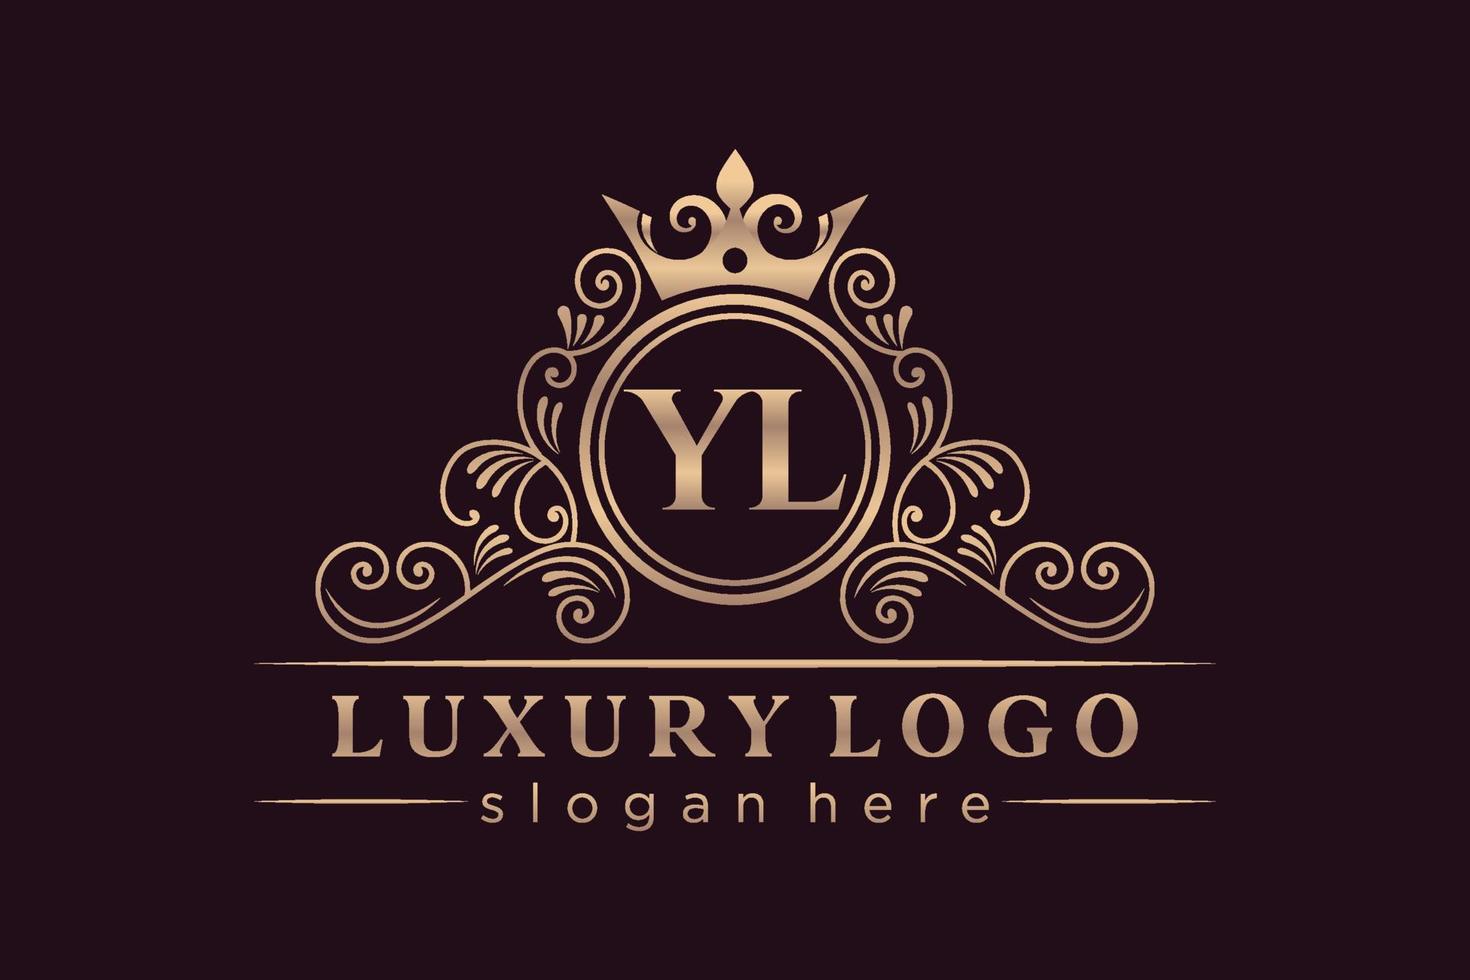 YL Initial Letter Gold calligraphic feminine floral hand drawn heraldic monogram antique vintage style luxury logo design Premium Vector